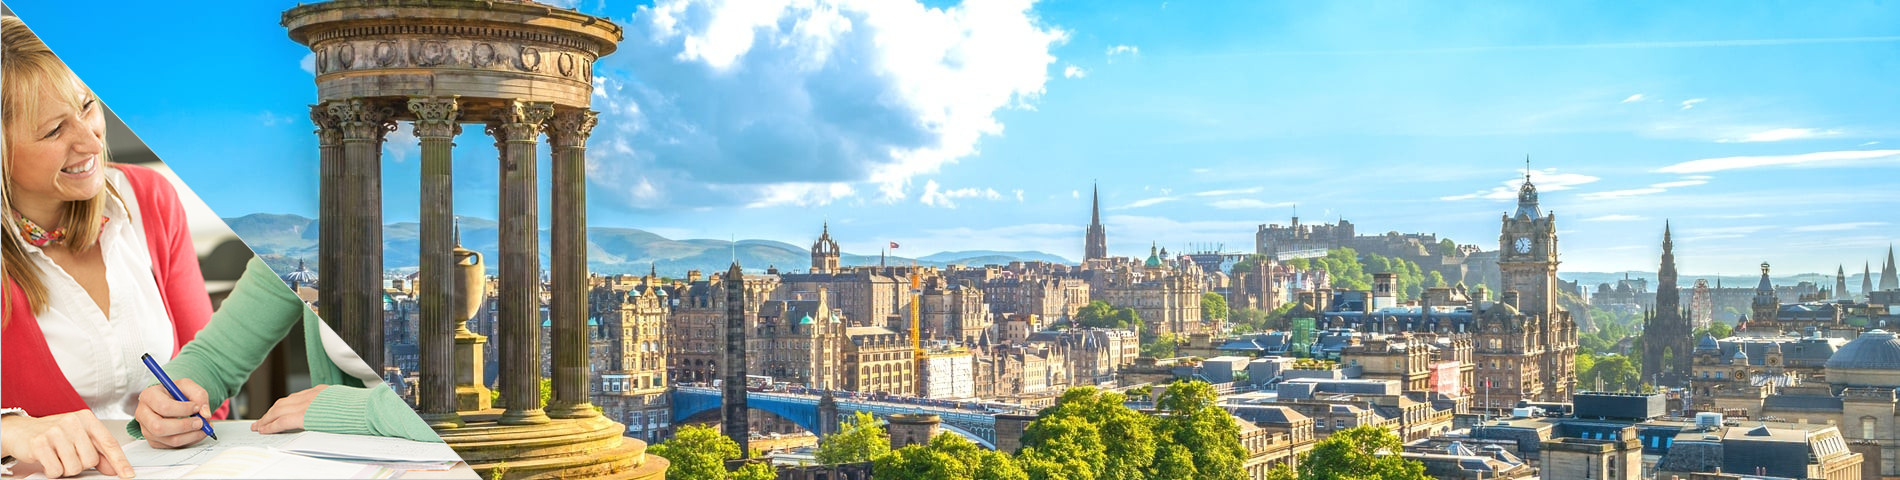 Edimburgo - Estudia el Idioma y Vive con el Profesor